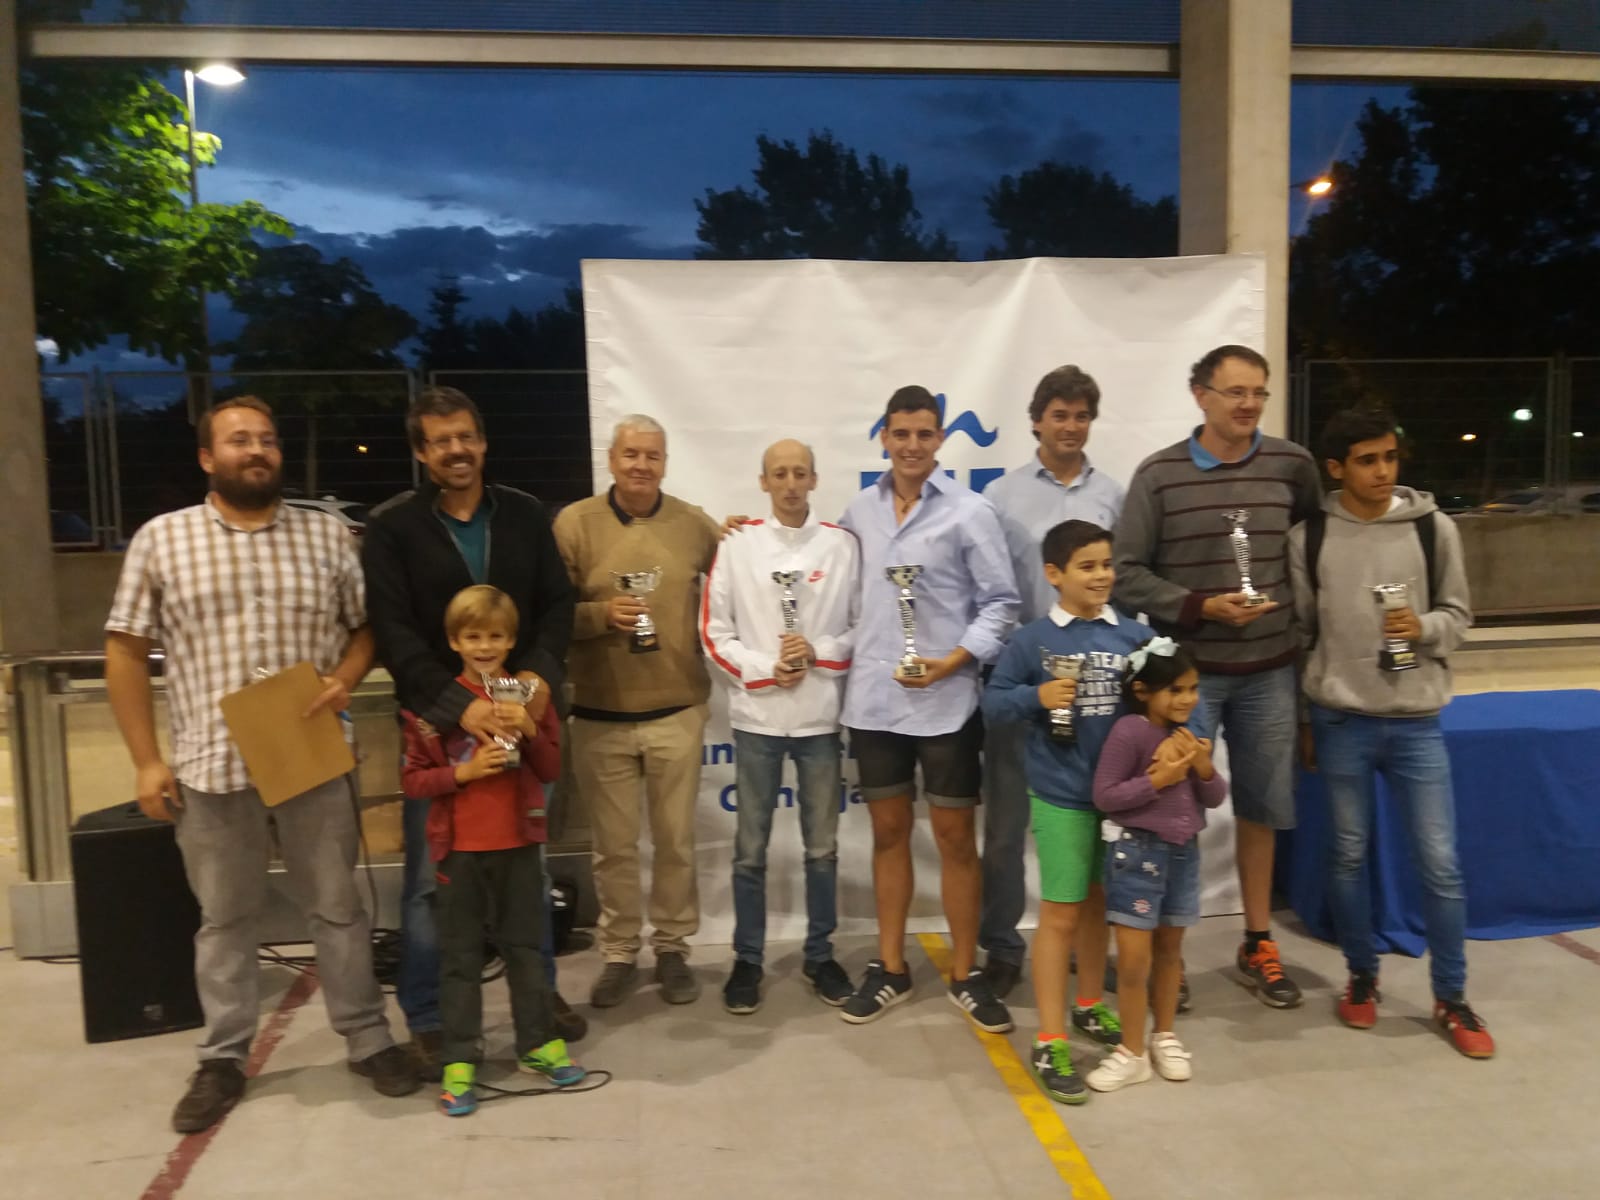 Roberto Mazo conquista el torneo de ajedrez de las Fiestas de Majadahonda 2018 tras superar un cuádruple empate